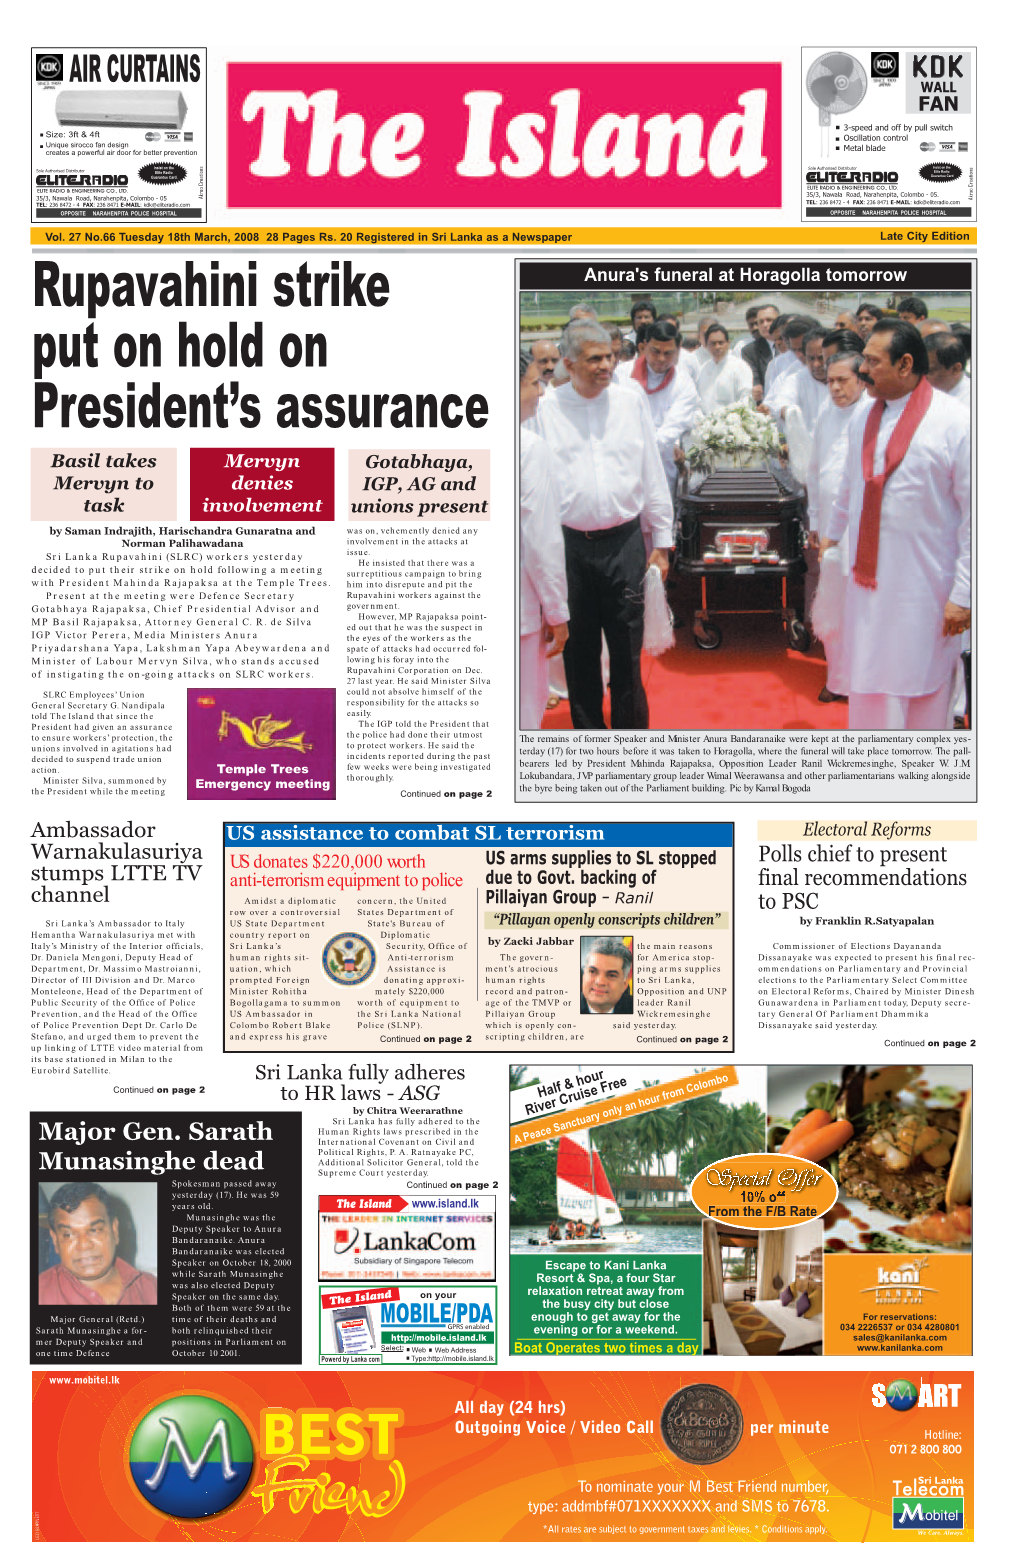 Rupavahini Strike Put on Hold on President's Assurance